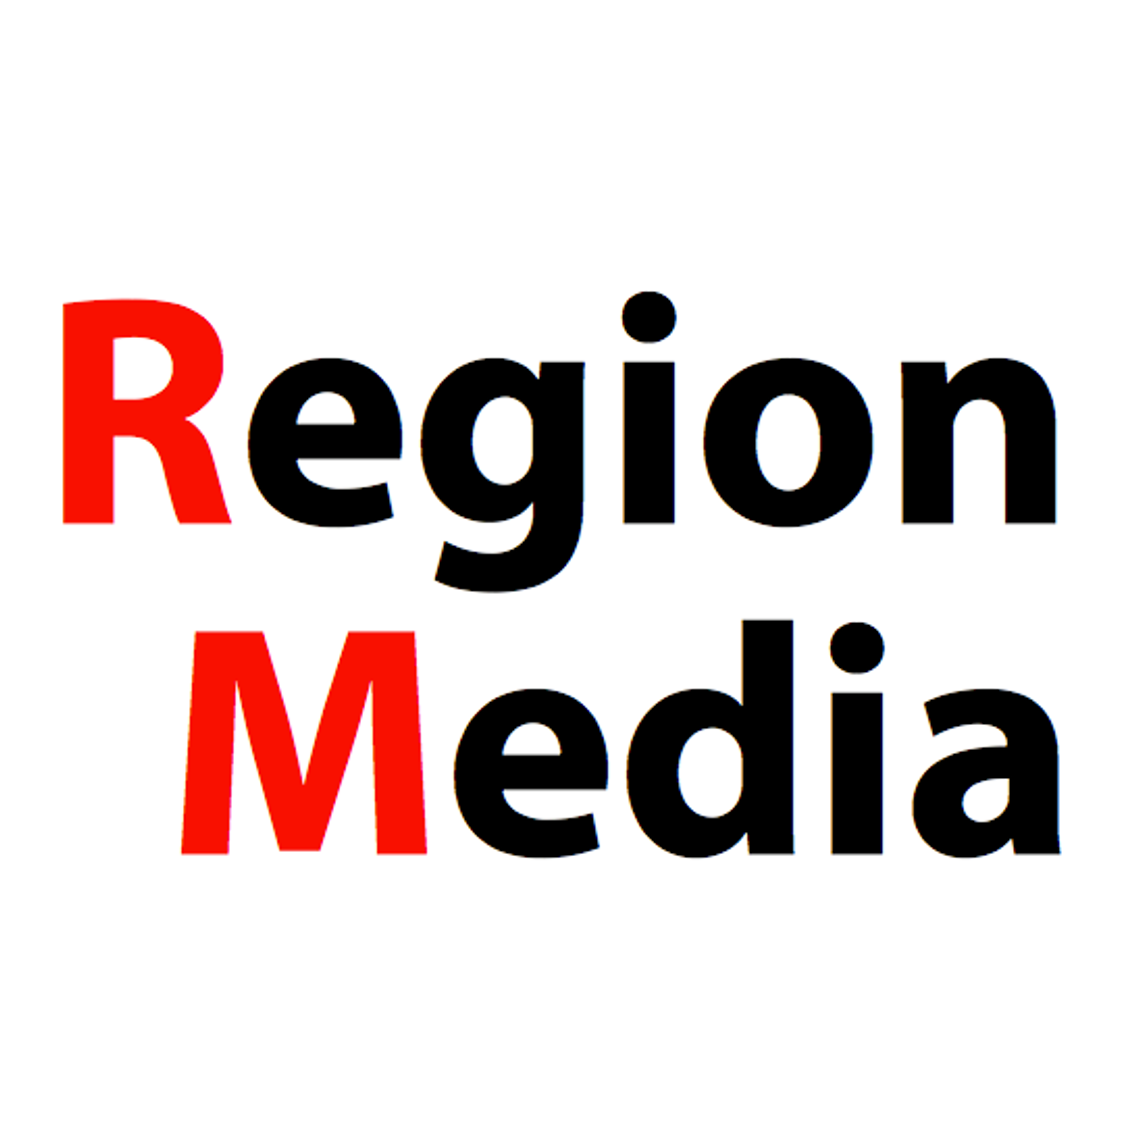 REGION MEDIA